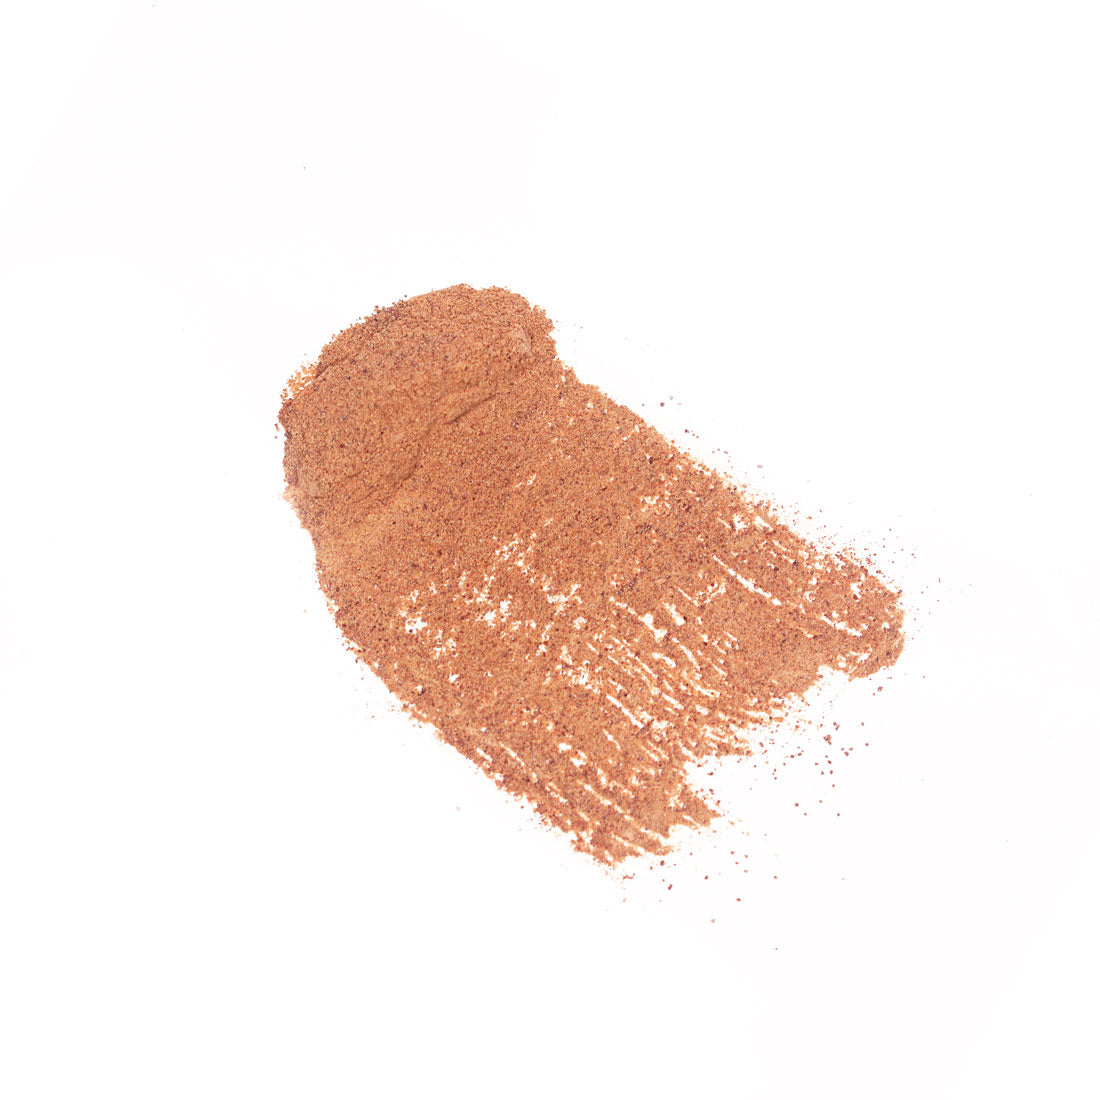 Tamarind pulp powder